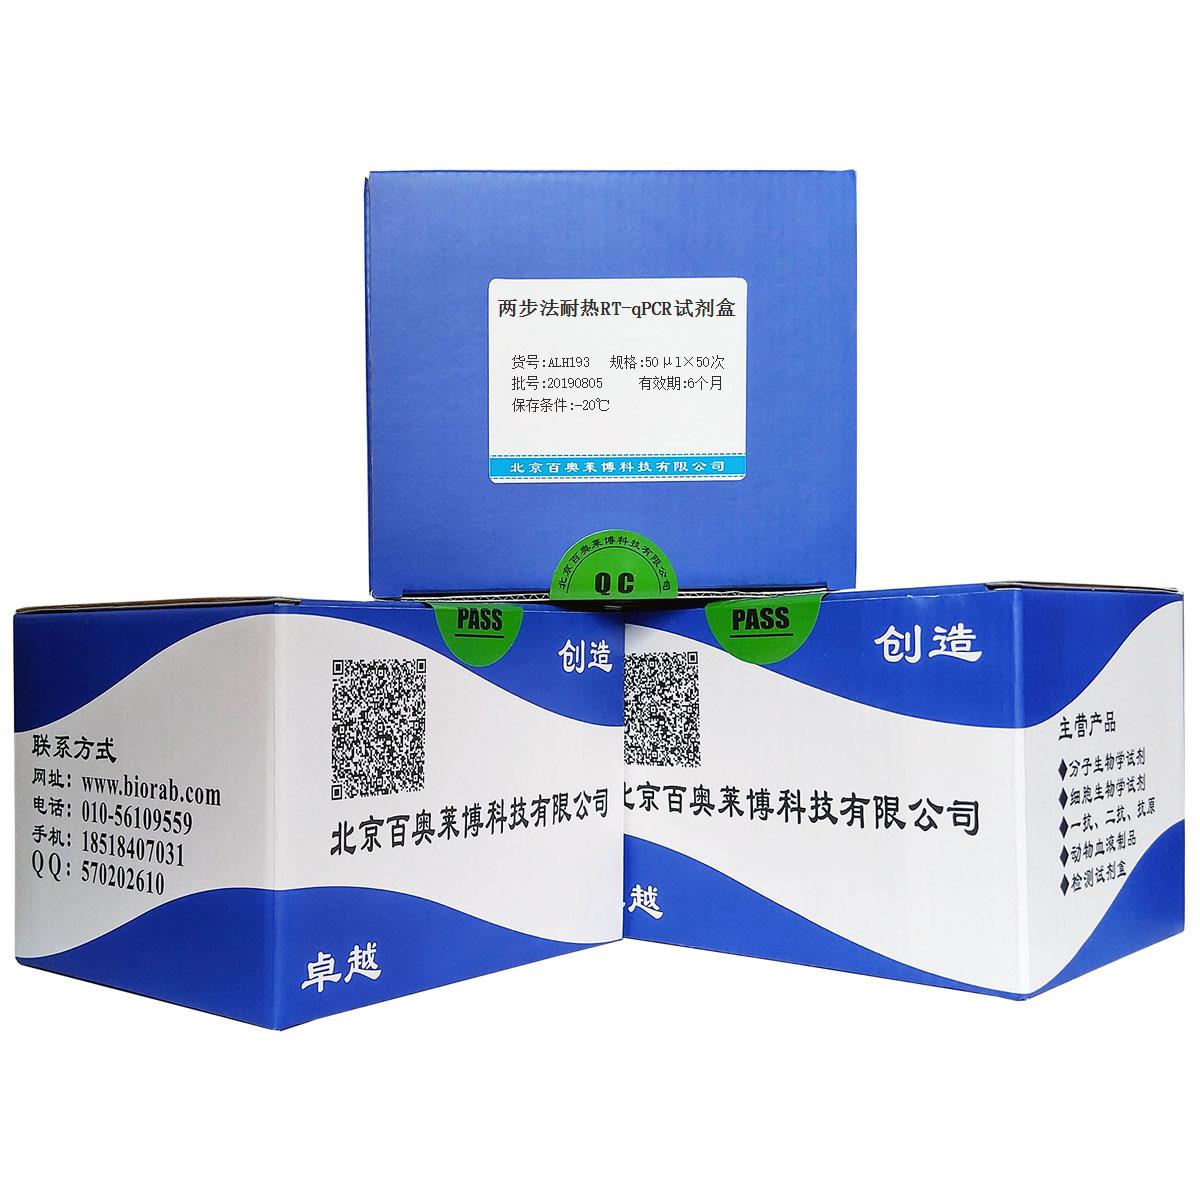 两步法耐热RT-qPCR试剂盒北京供应商